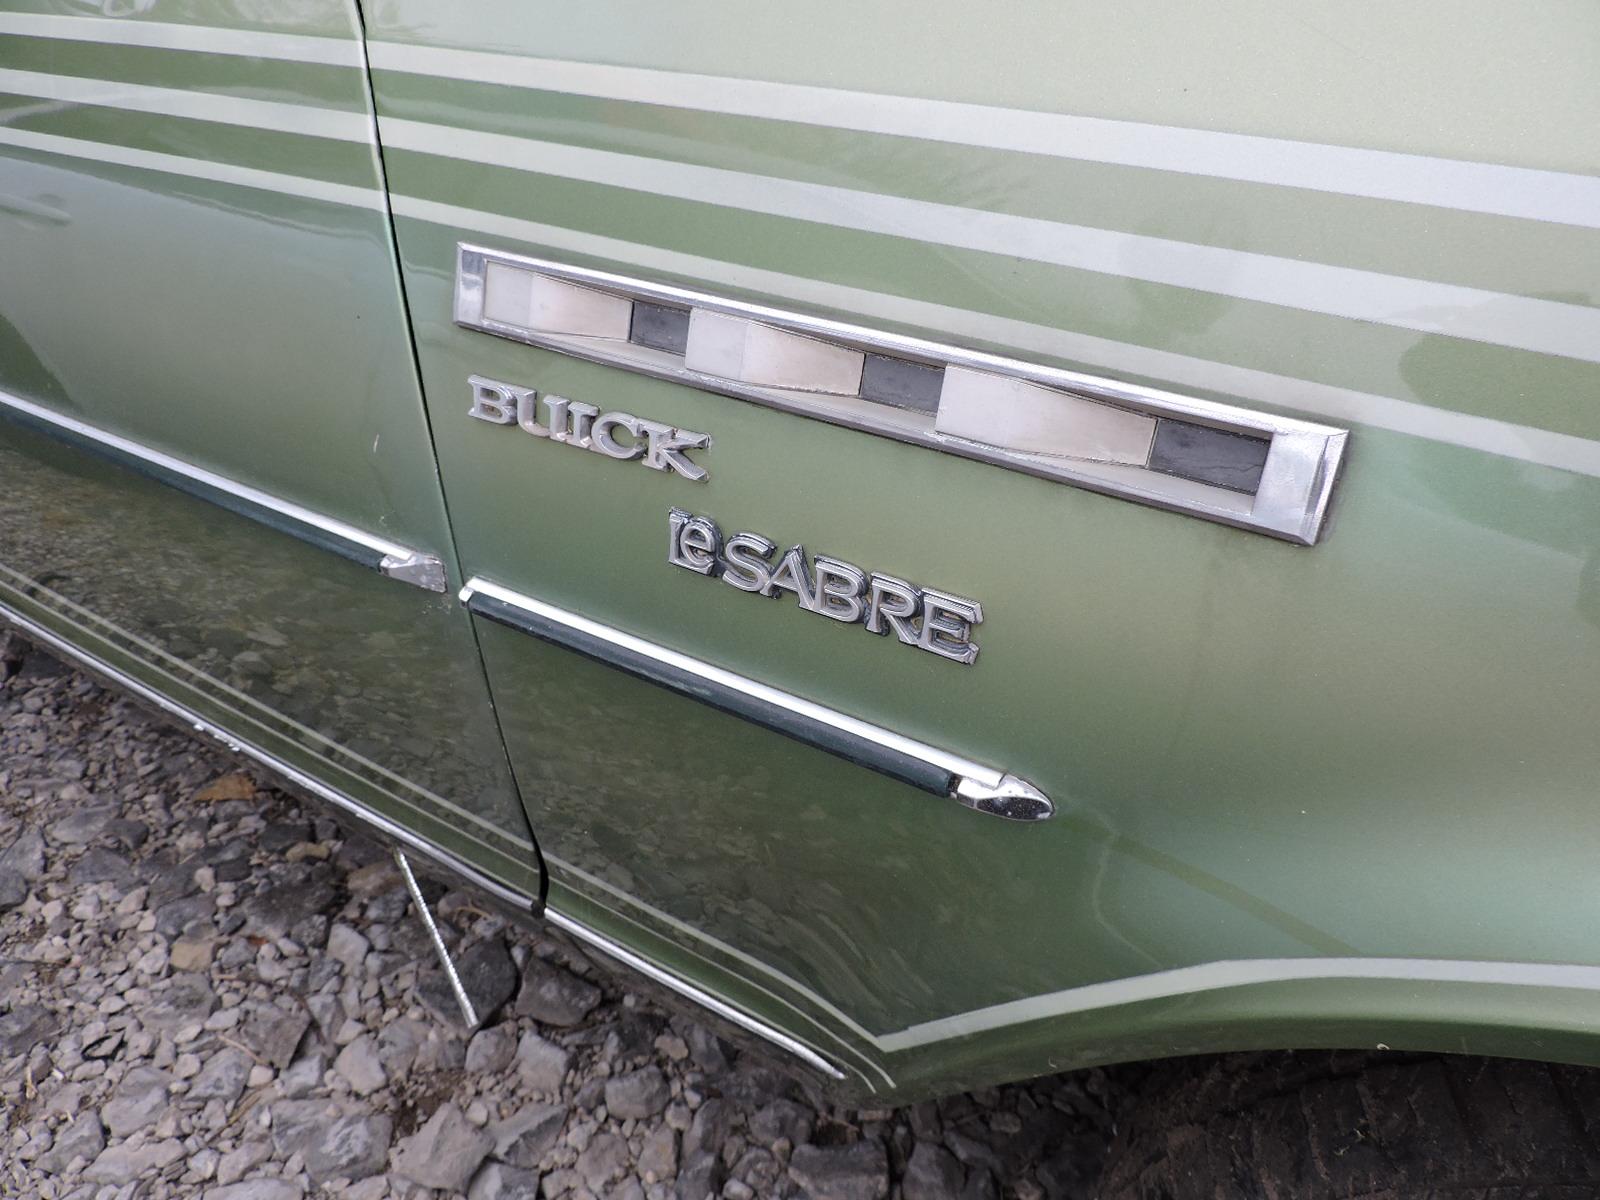 1979 Buick LeSabre Sedan - Custom Paintwork, Used in 1980's Rap Videos